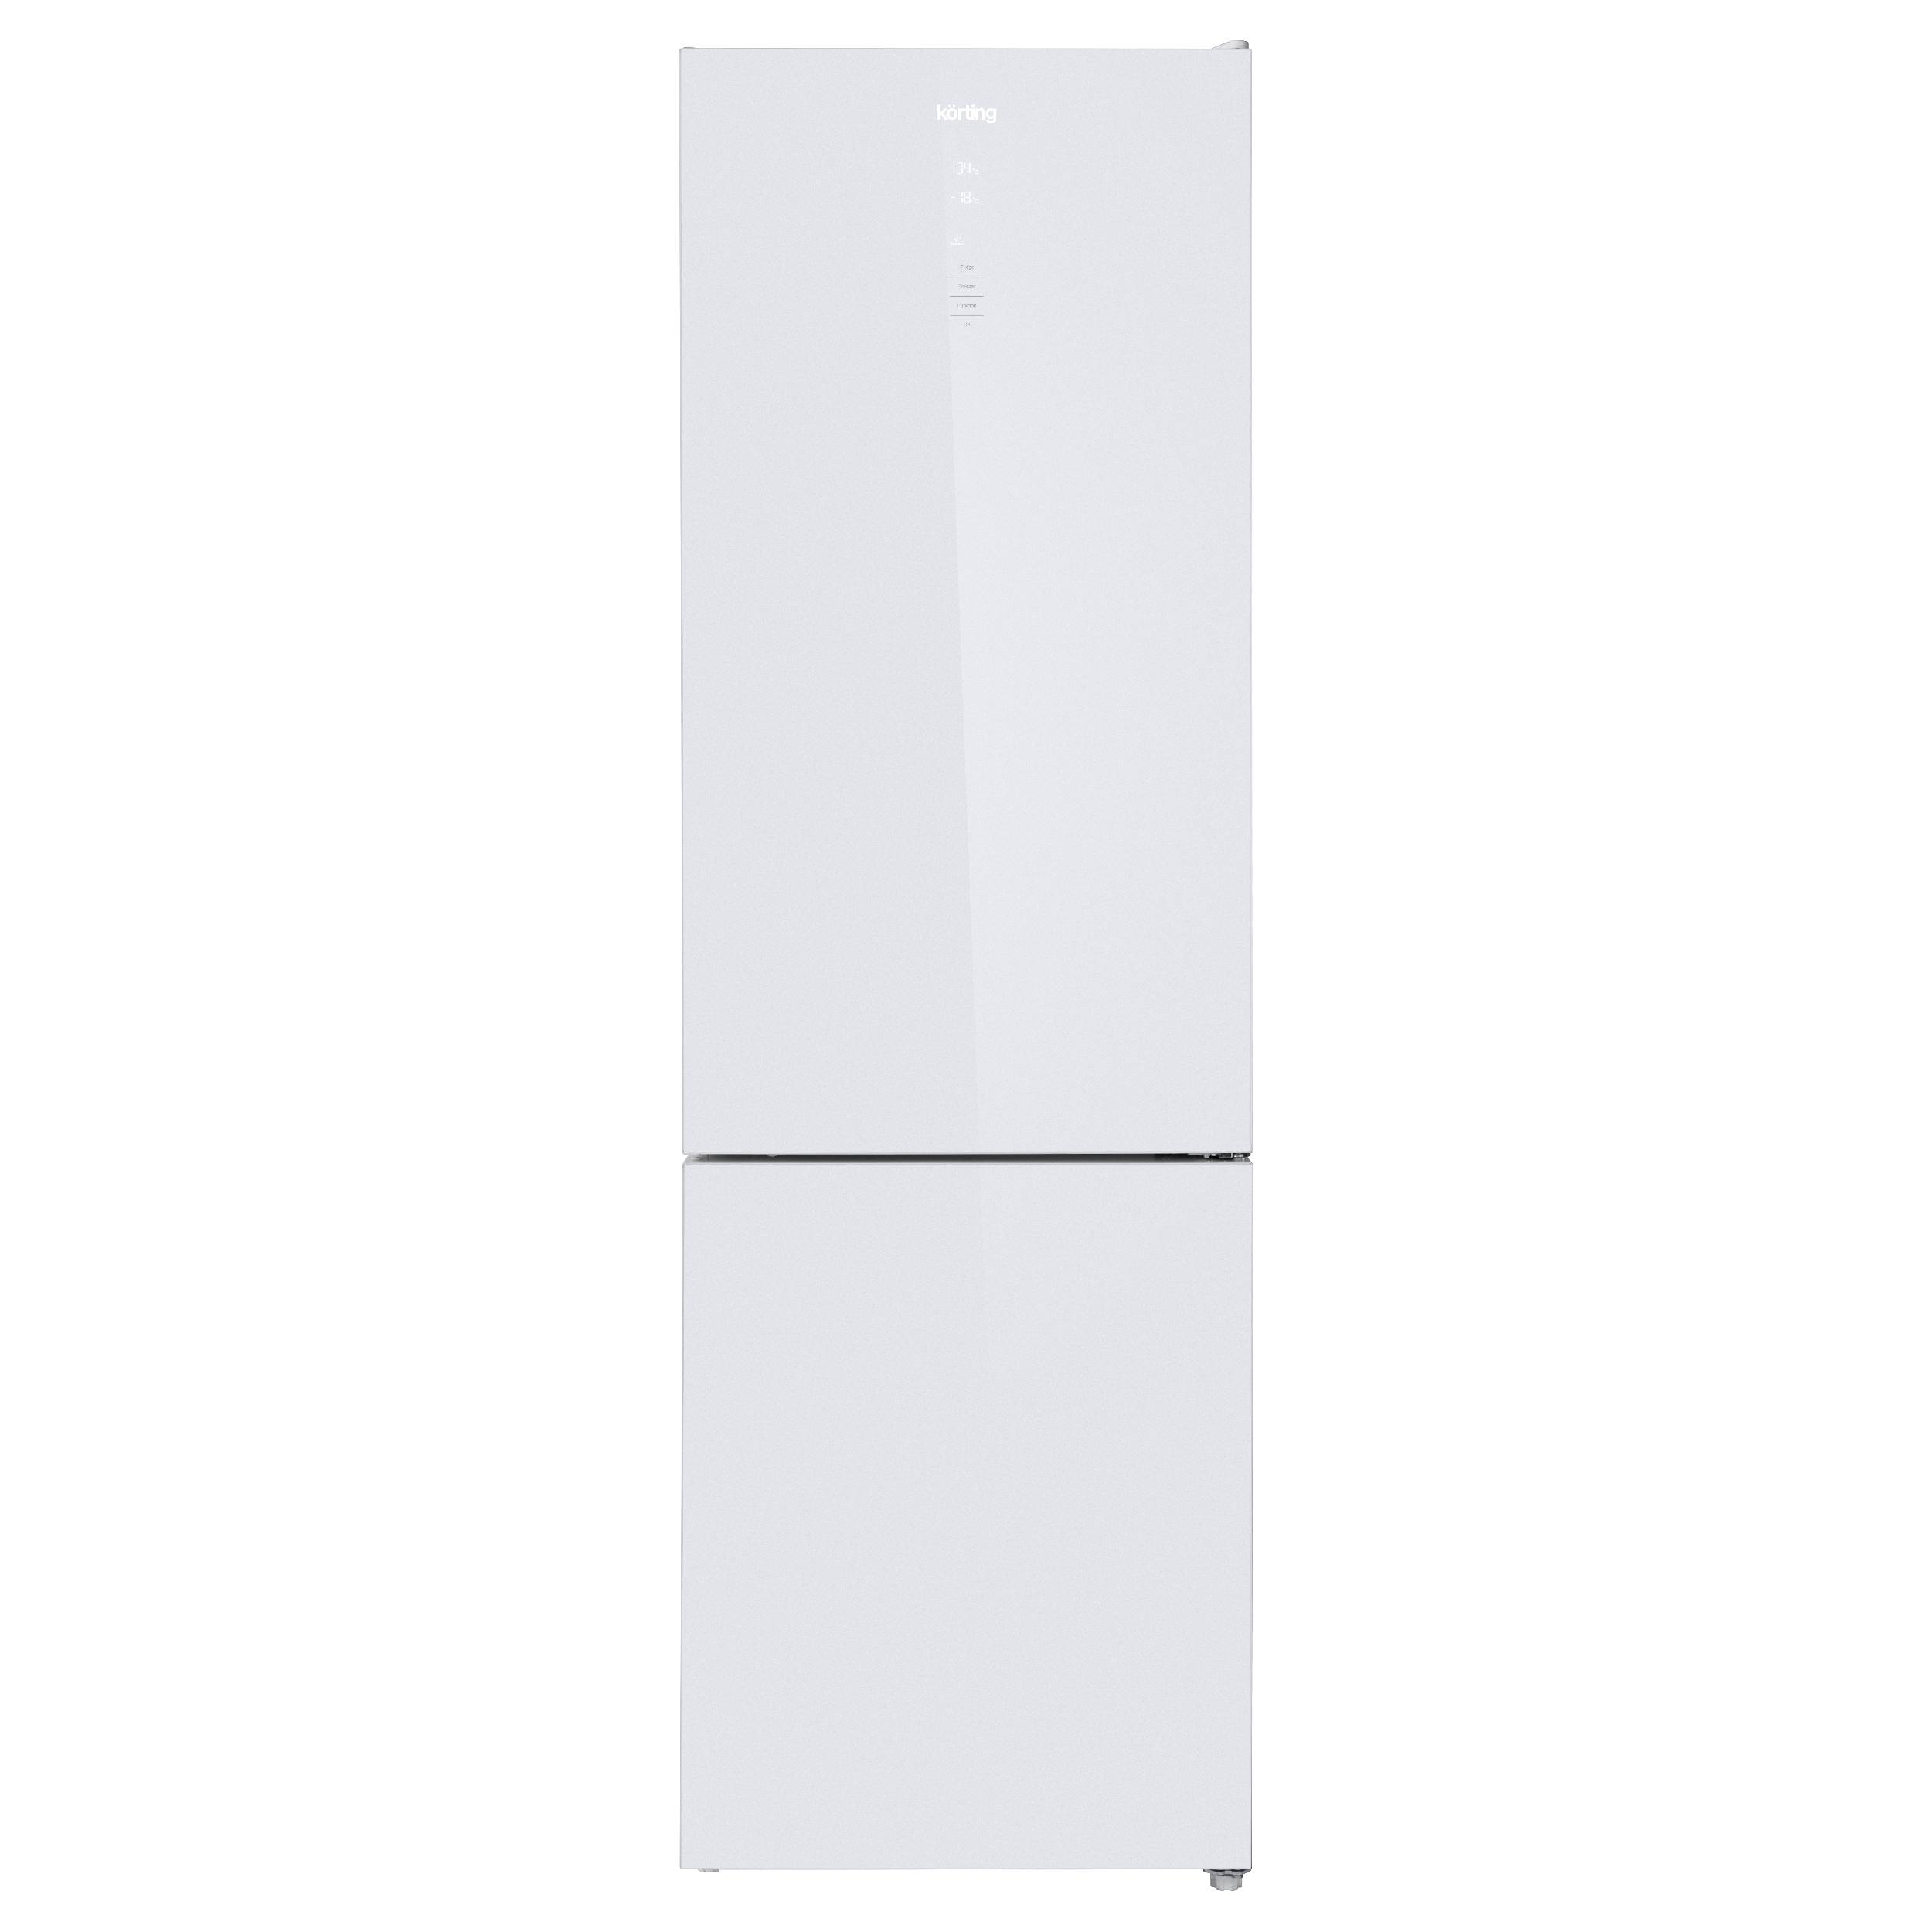 Холодильник Korting KNFC 62370 GW белый, серебристый двухкамерный холодильник korting knfc 62010 b